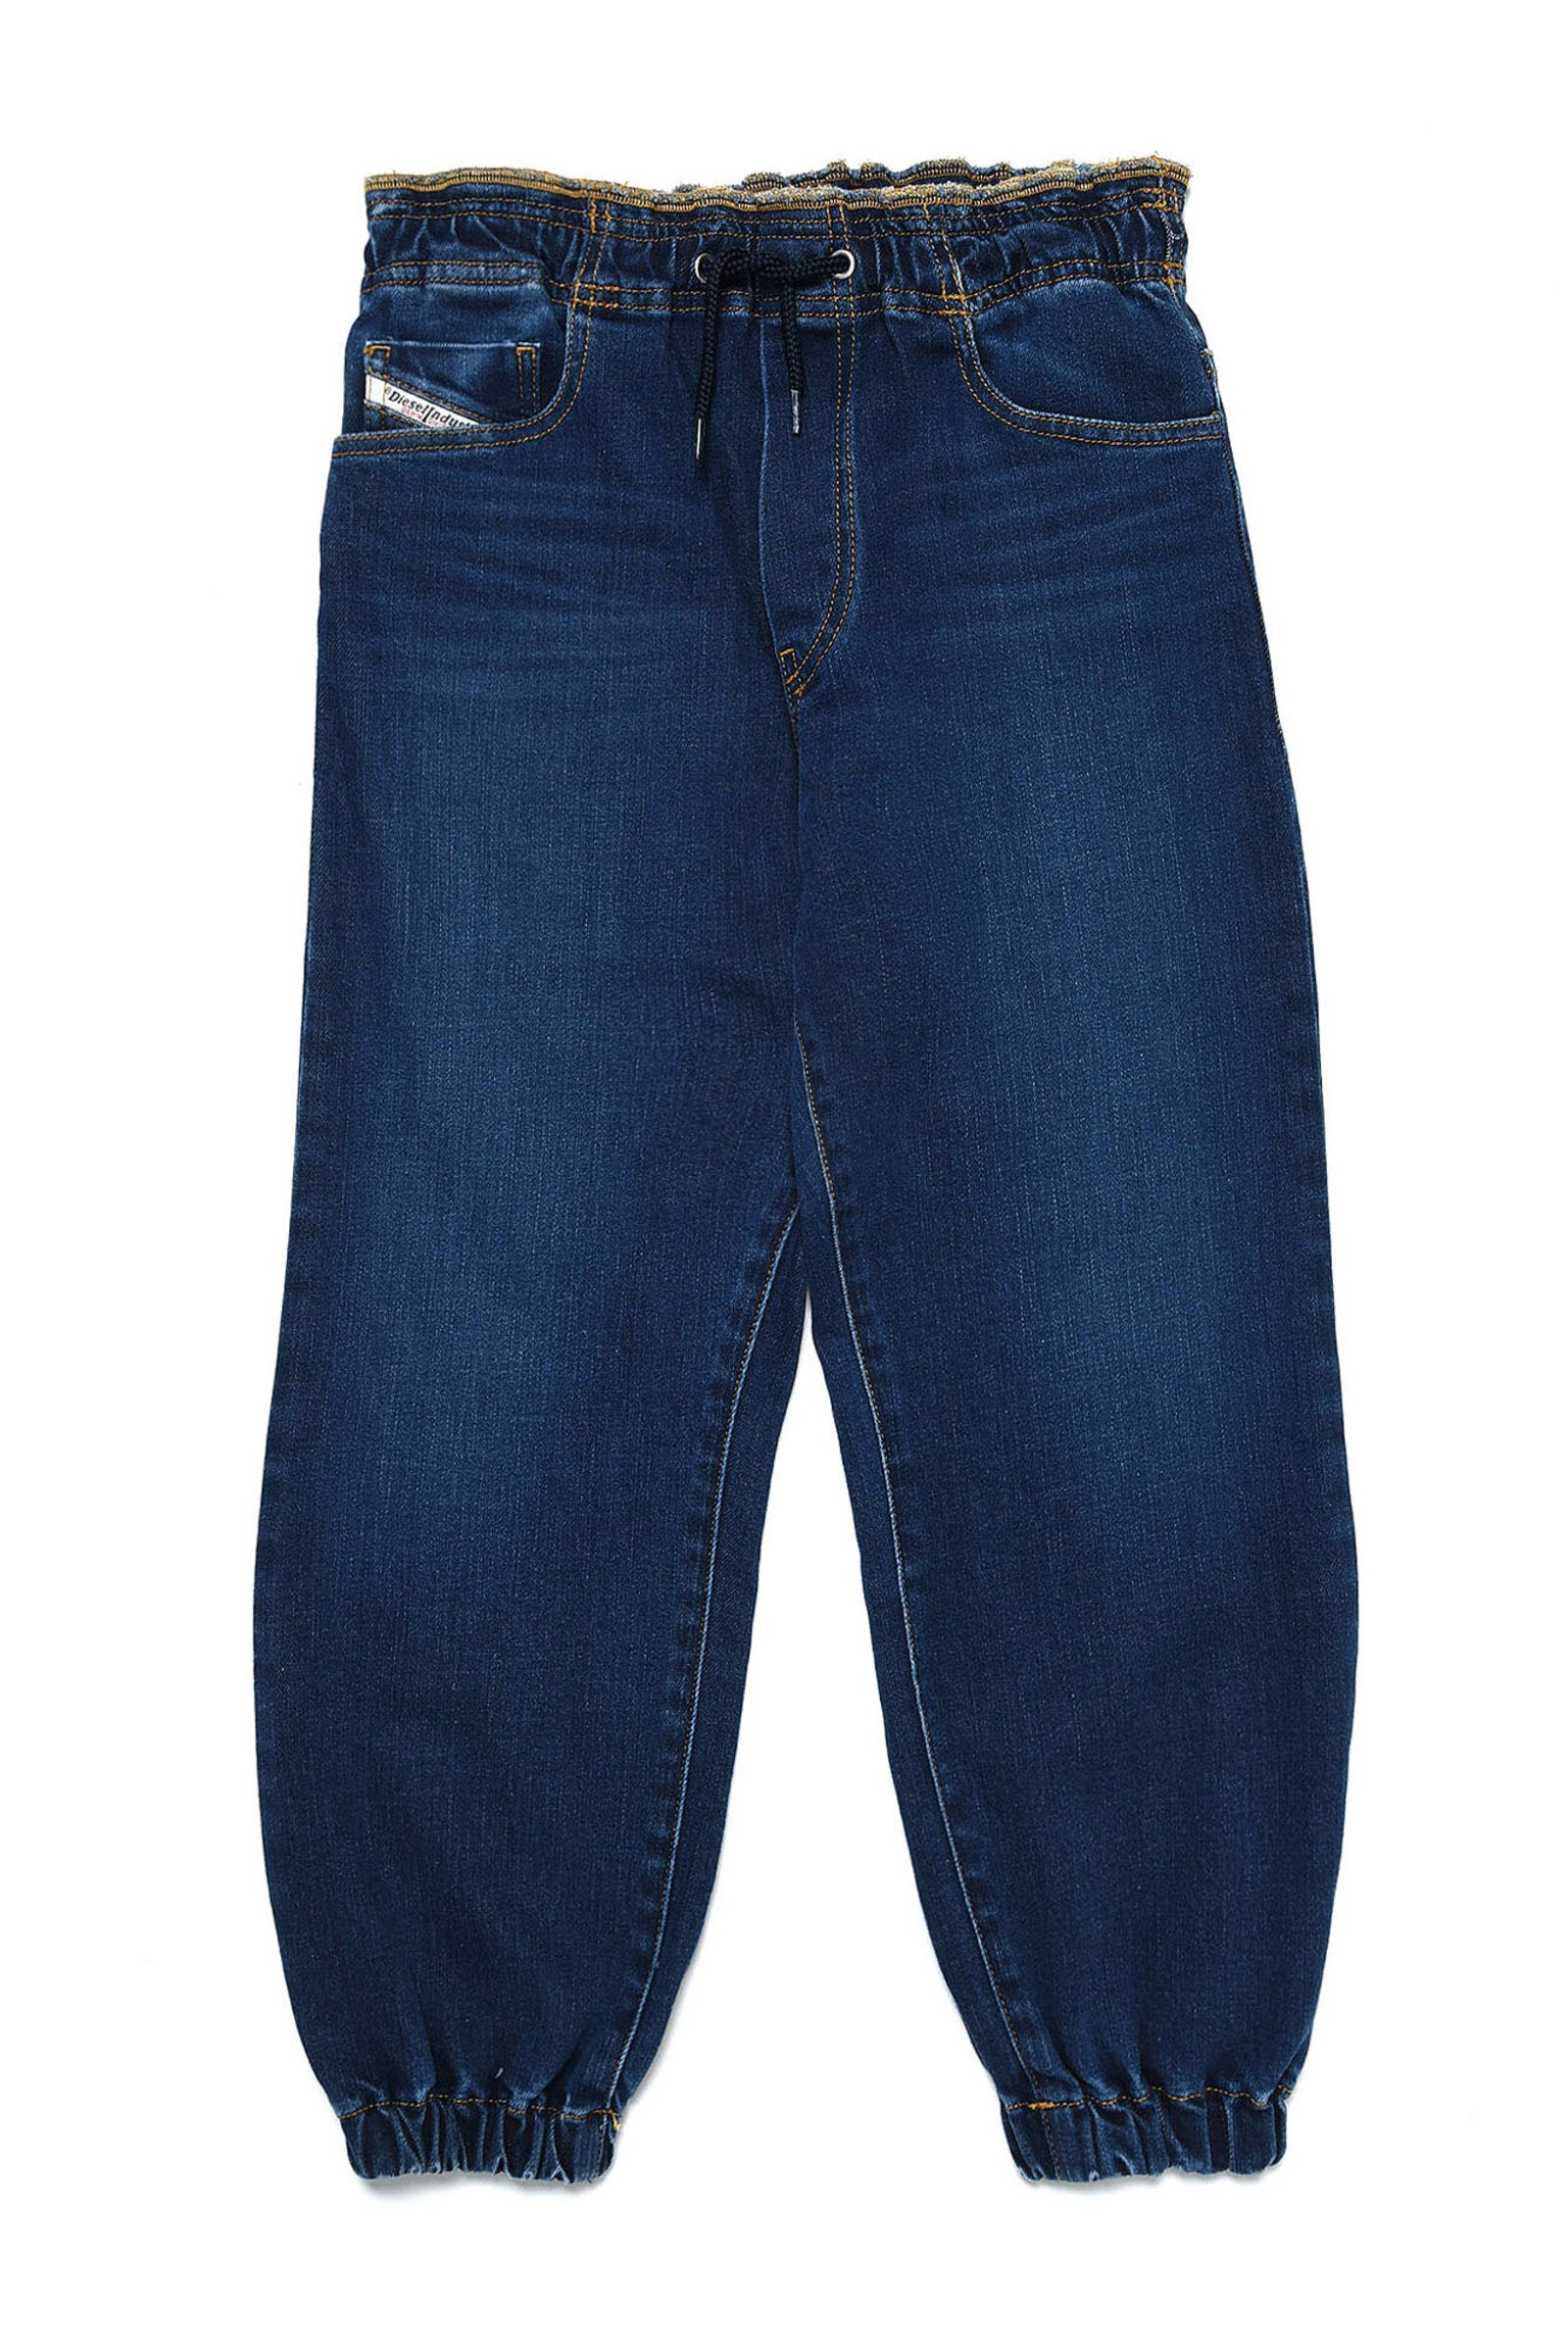 D-Mauri Straight Jeans blu dalla linea morbida 